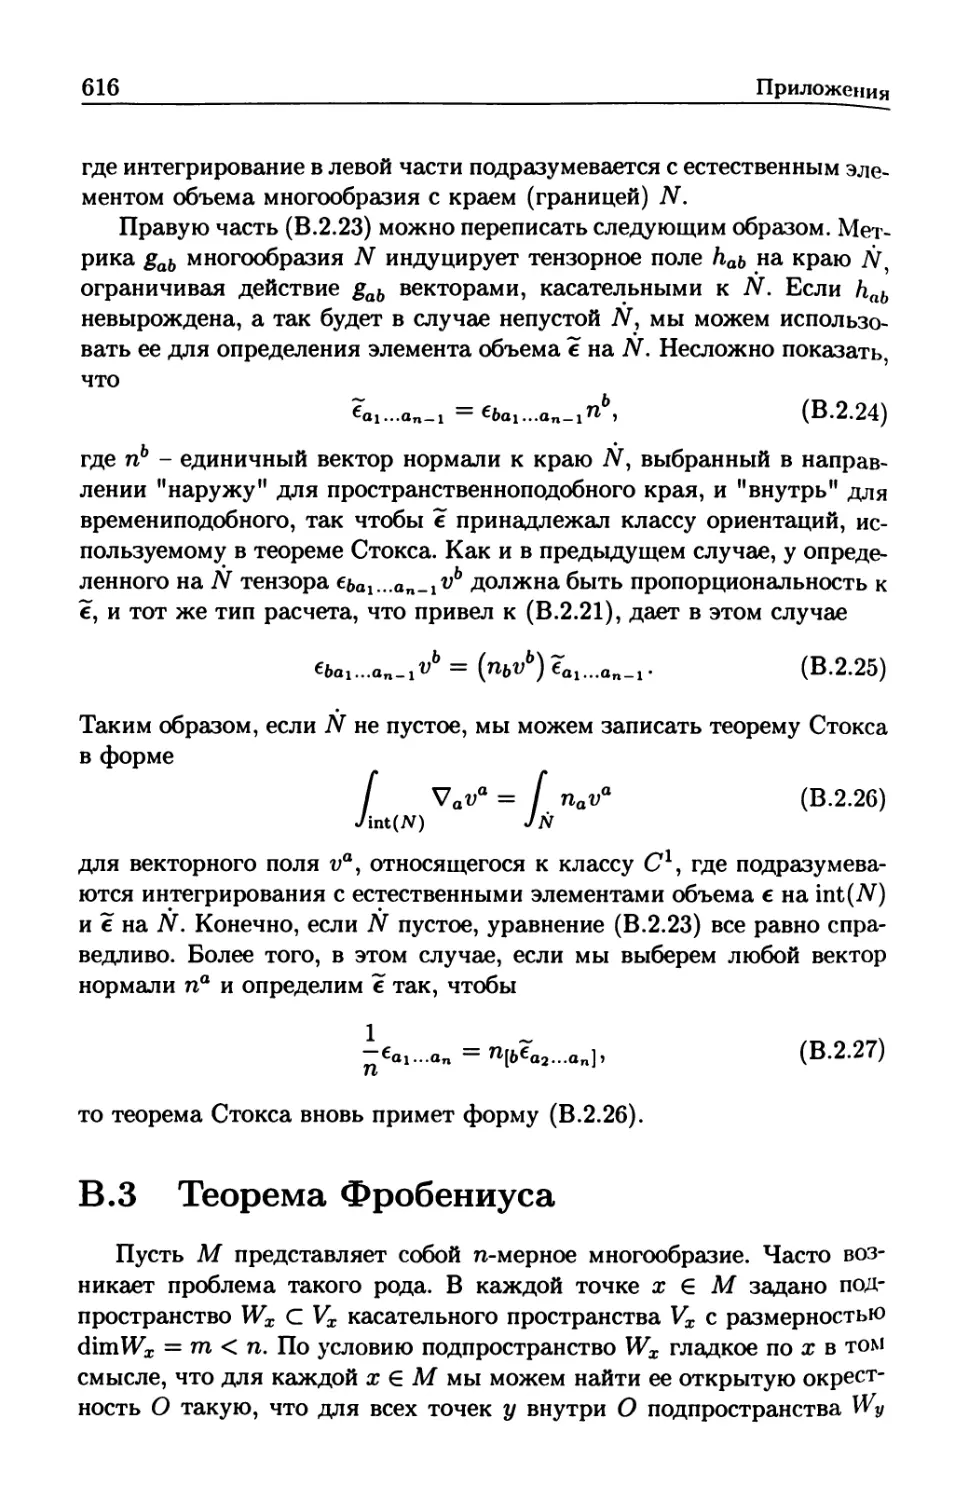 B.3 Теорема Фробениуса